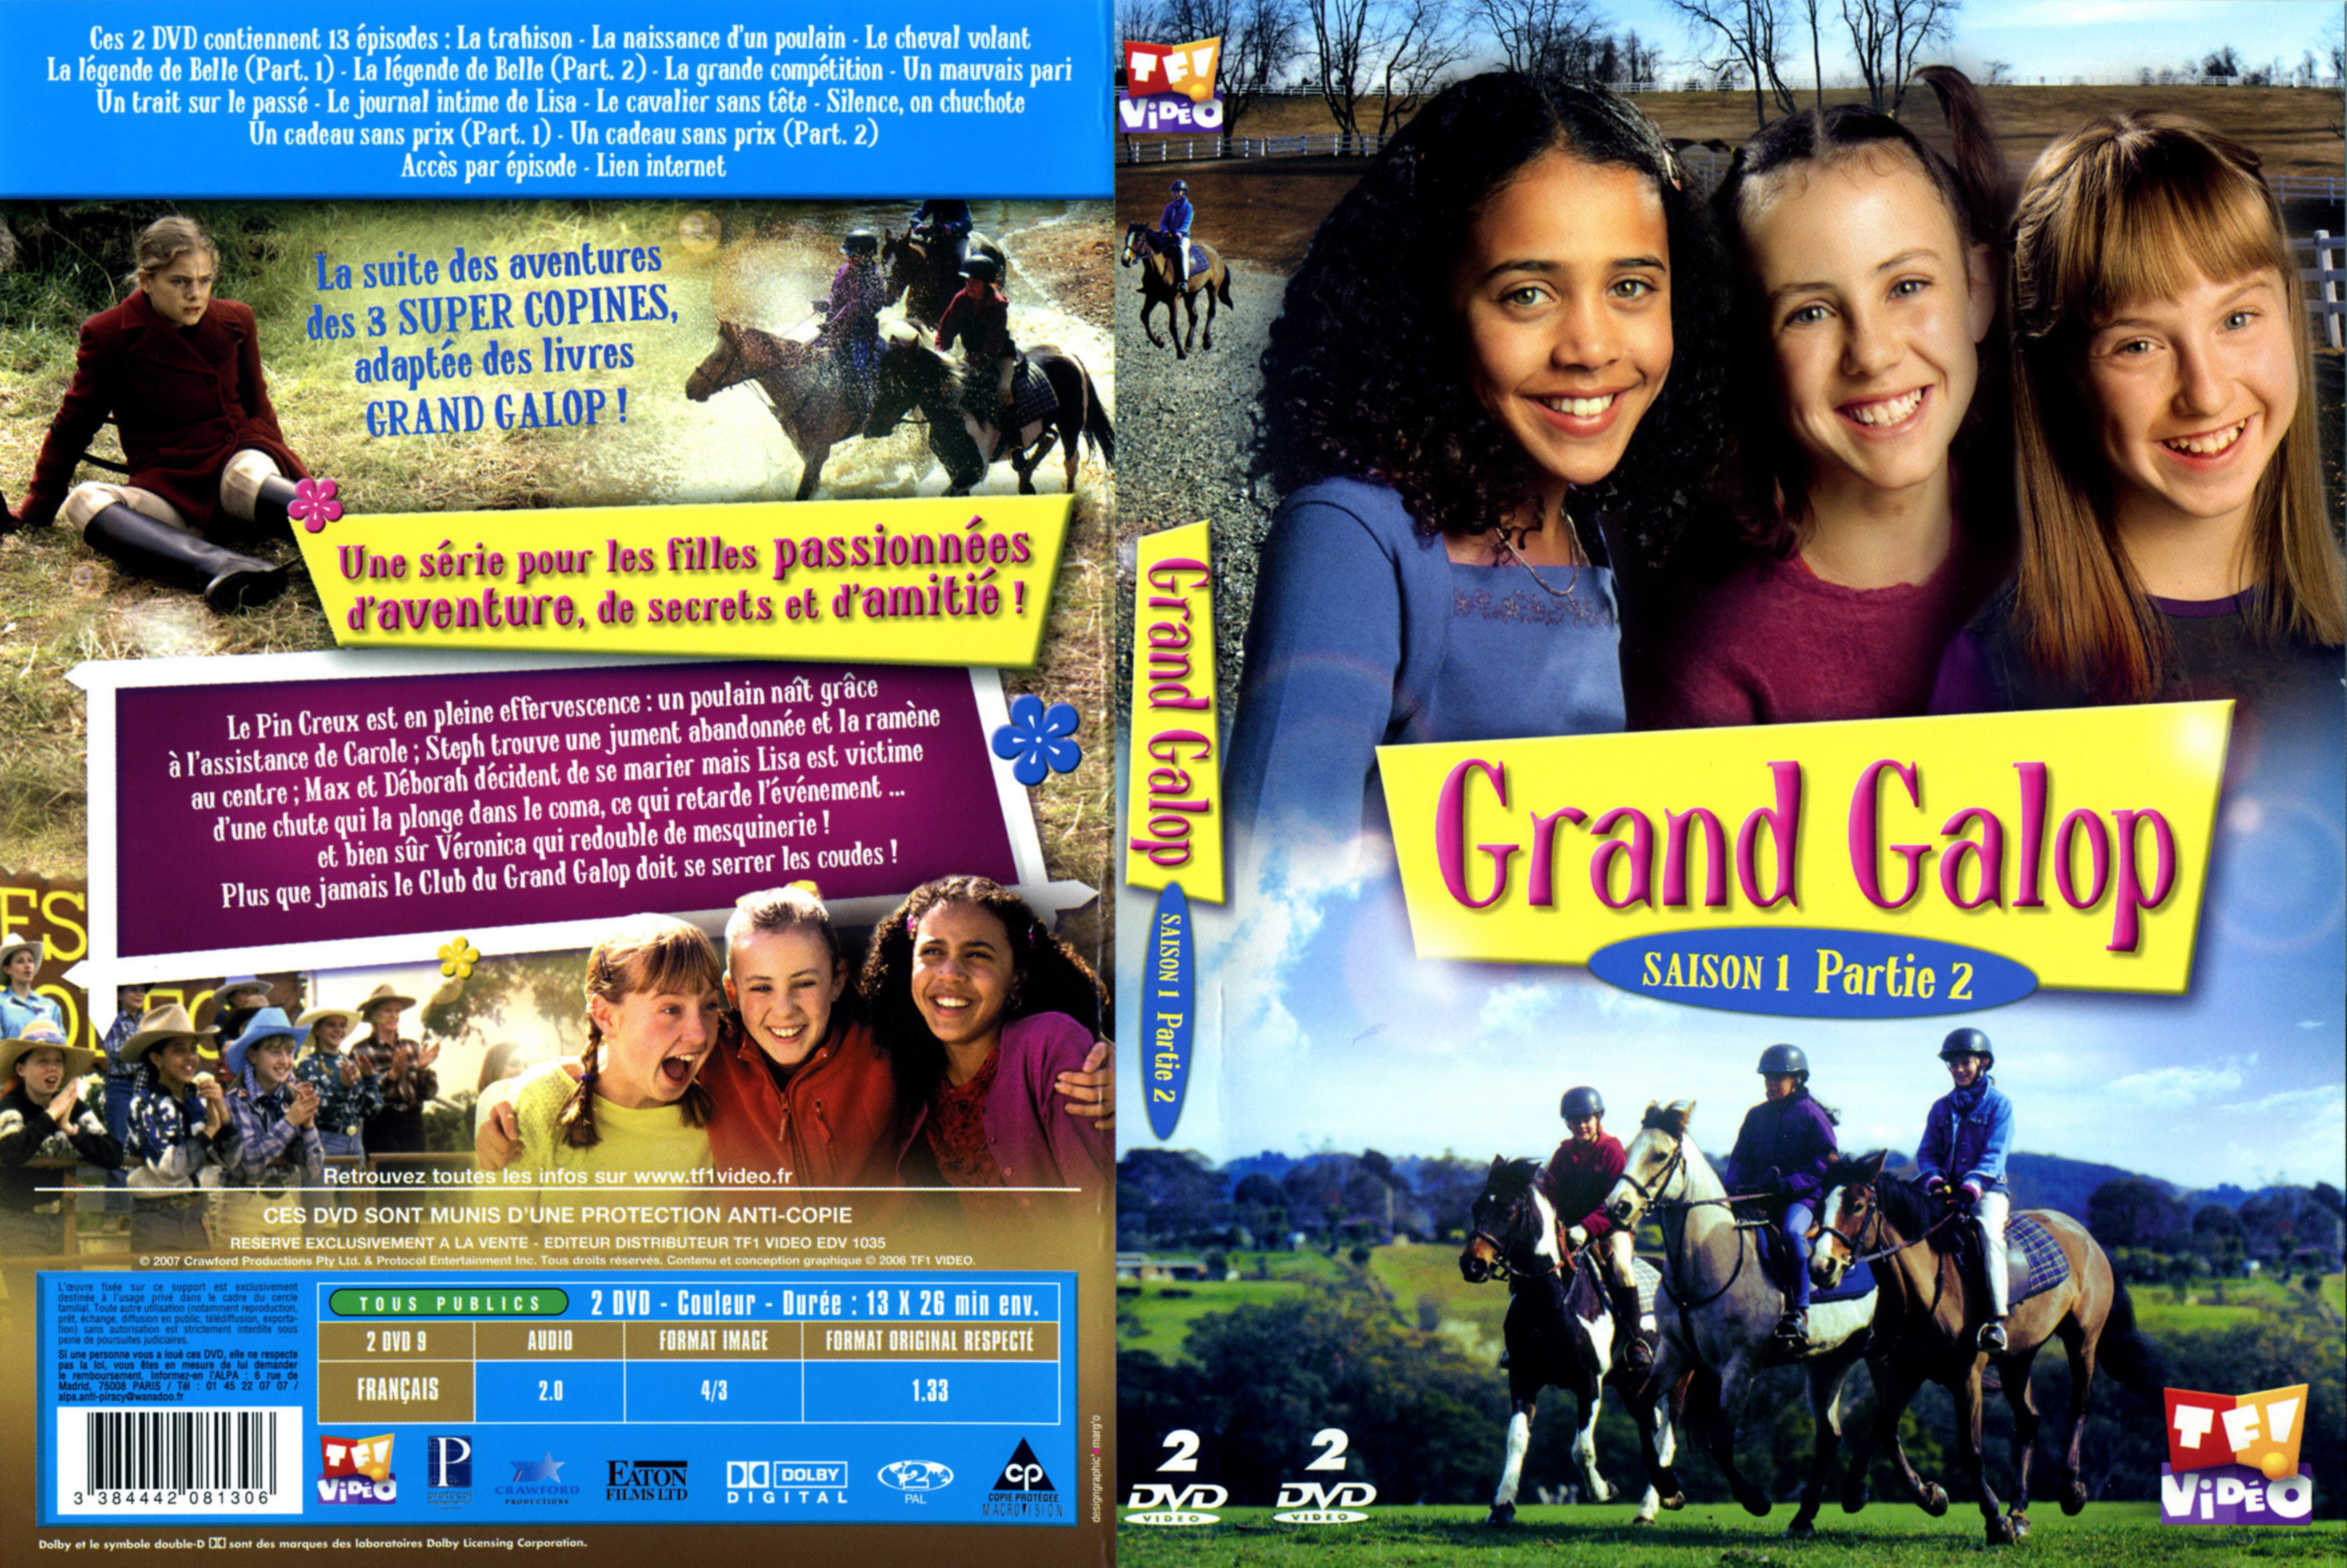 Jaquette DVD Grand galop Saison 1 Partie 2